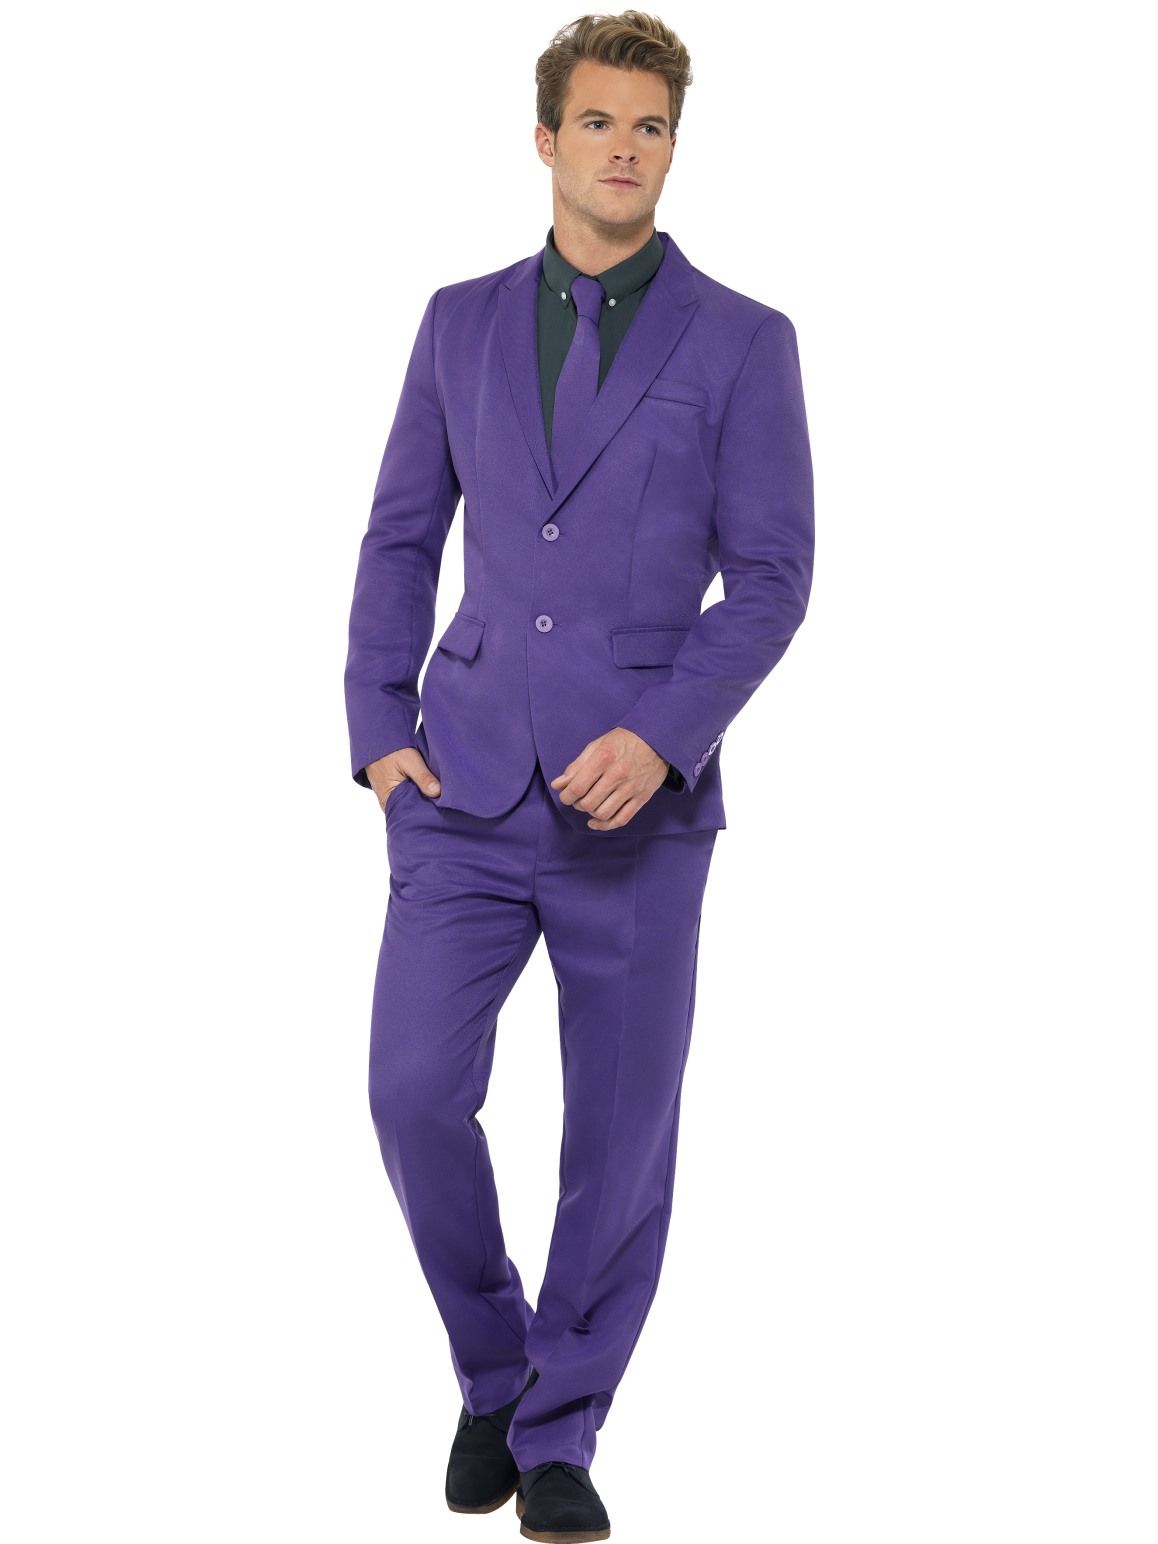 Men's OppoSuits Slim-Fit The Joker Suit & Tie Set